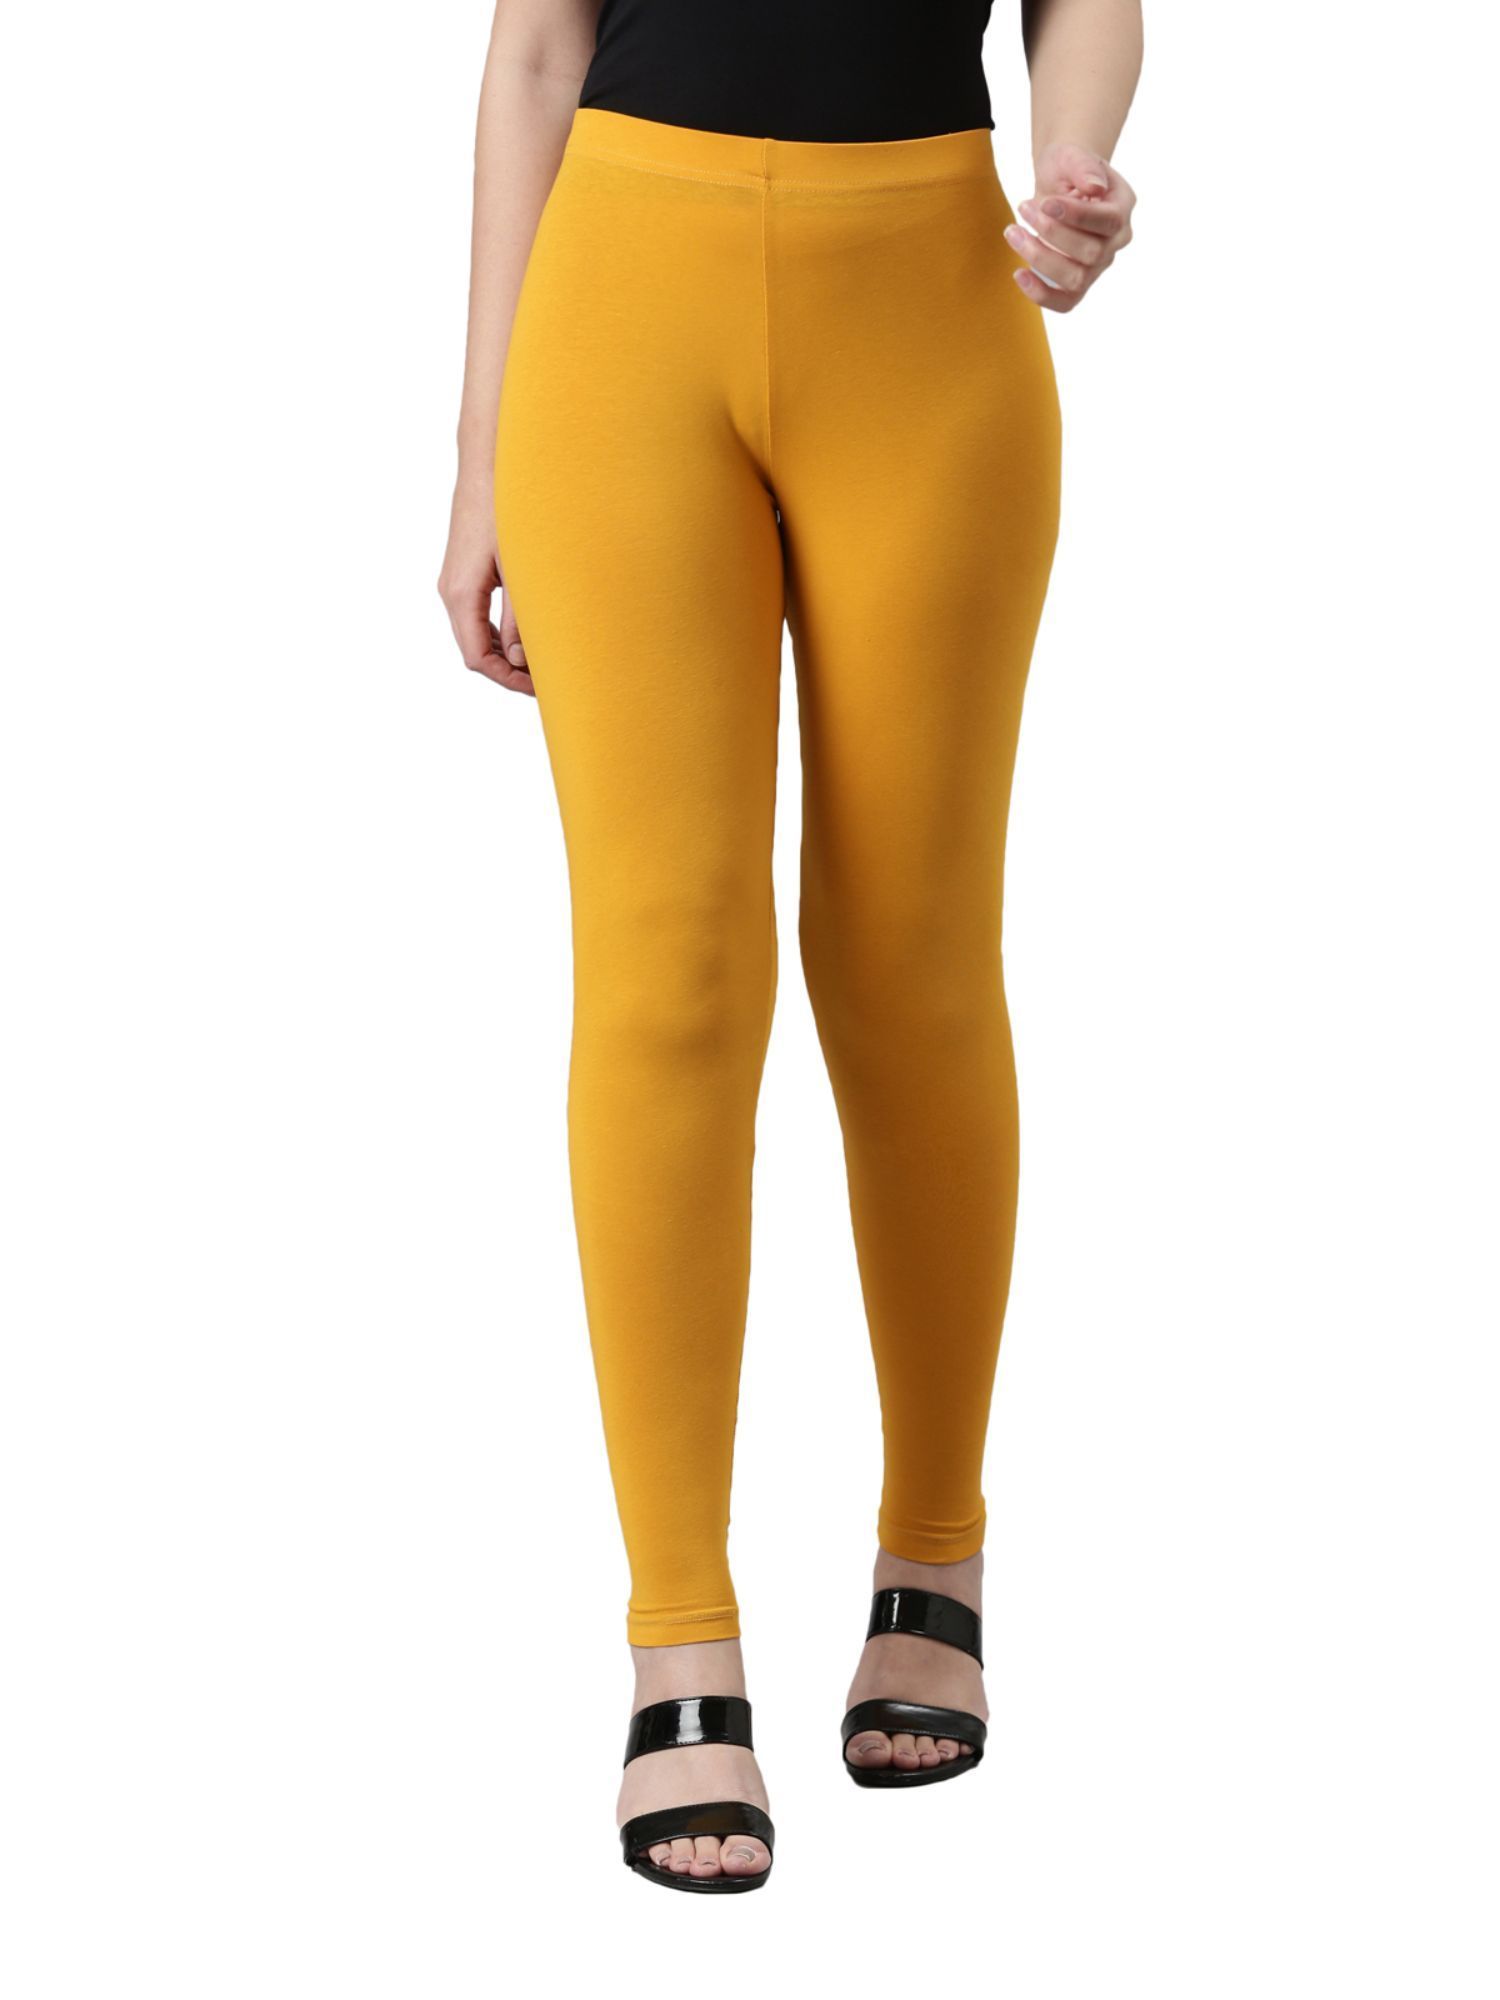 Leggins Bright Yellow Plain Cotton Leggings For Women, Full Length at Best  Price in Tirupur | Smart Knitwear